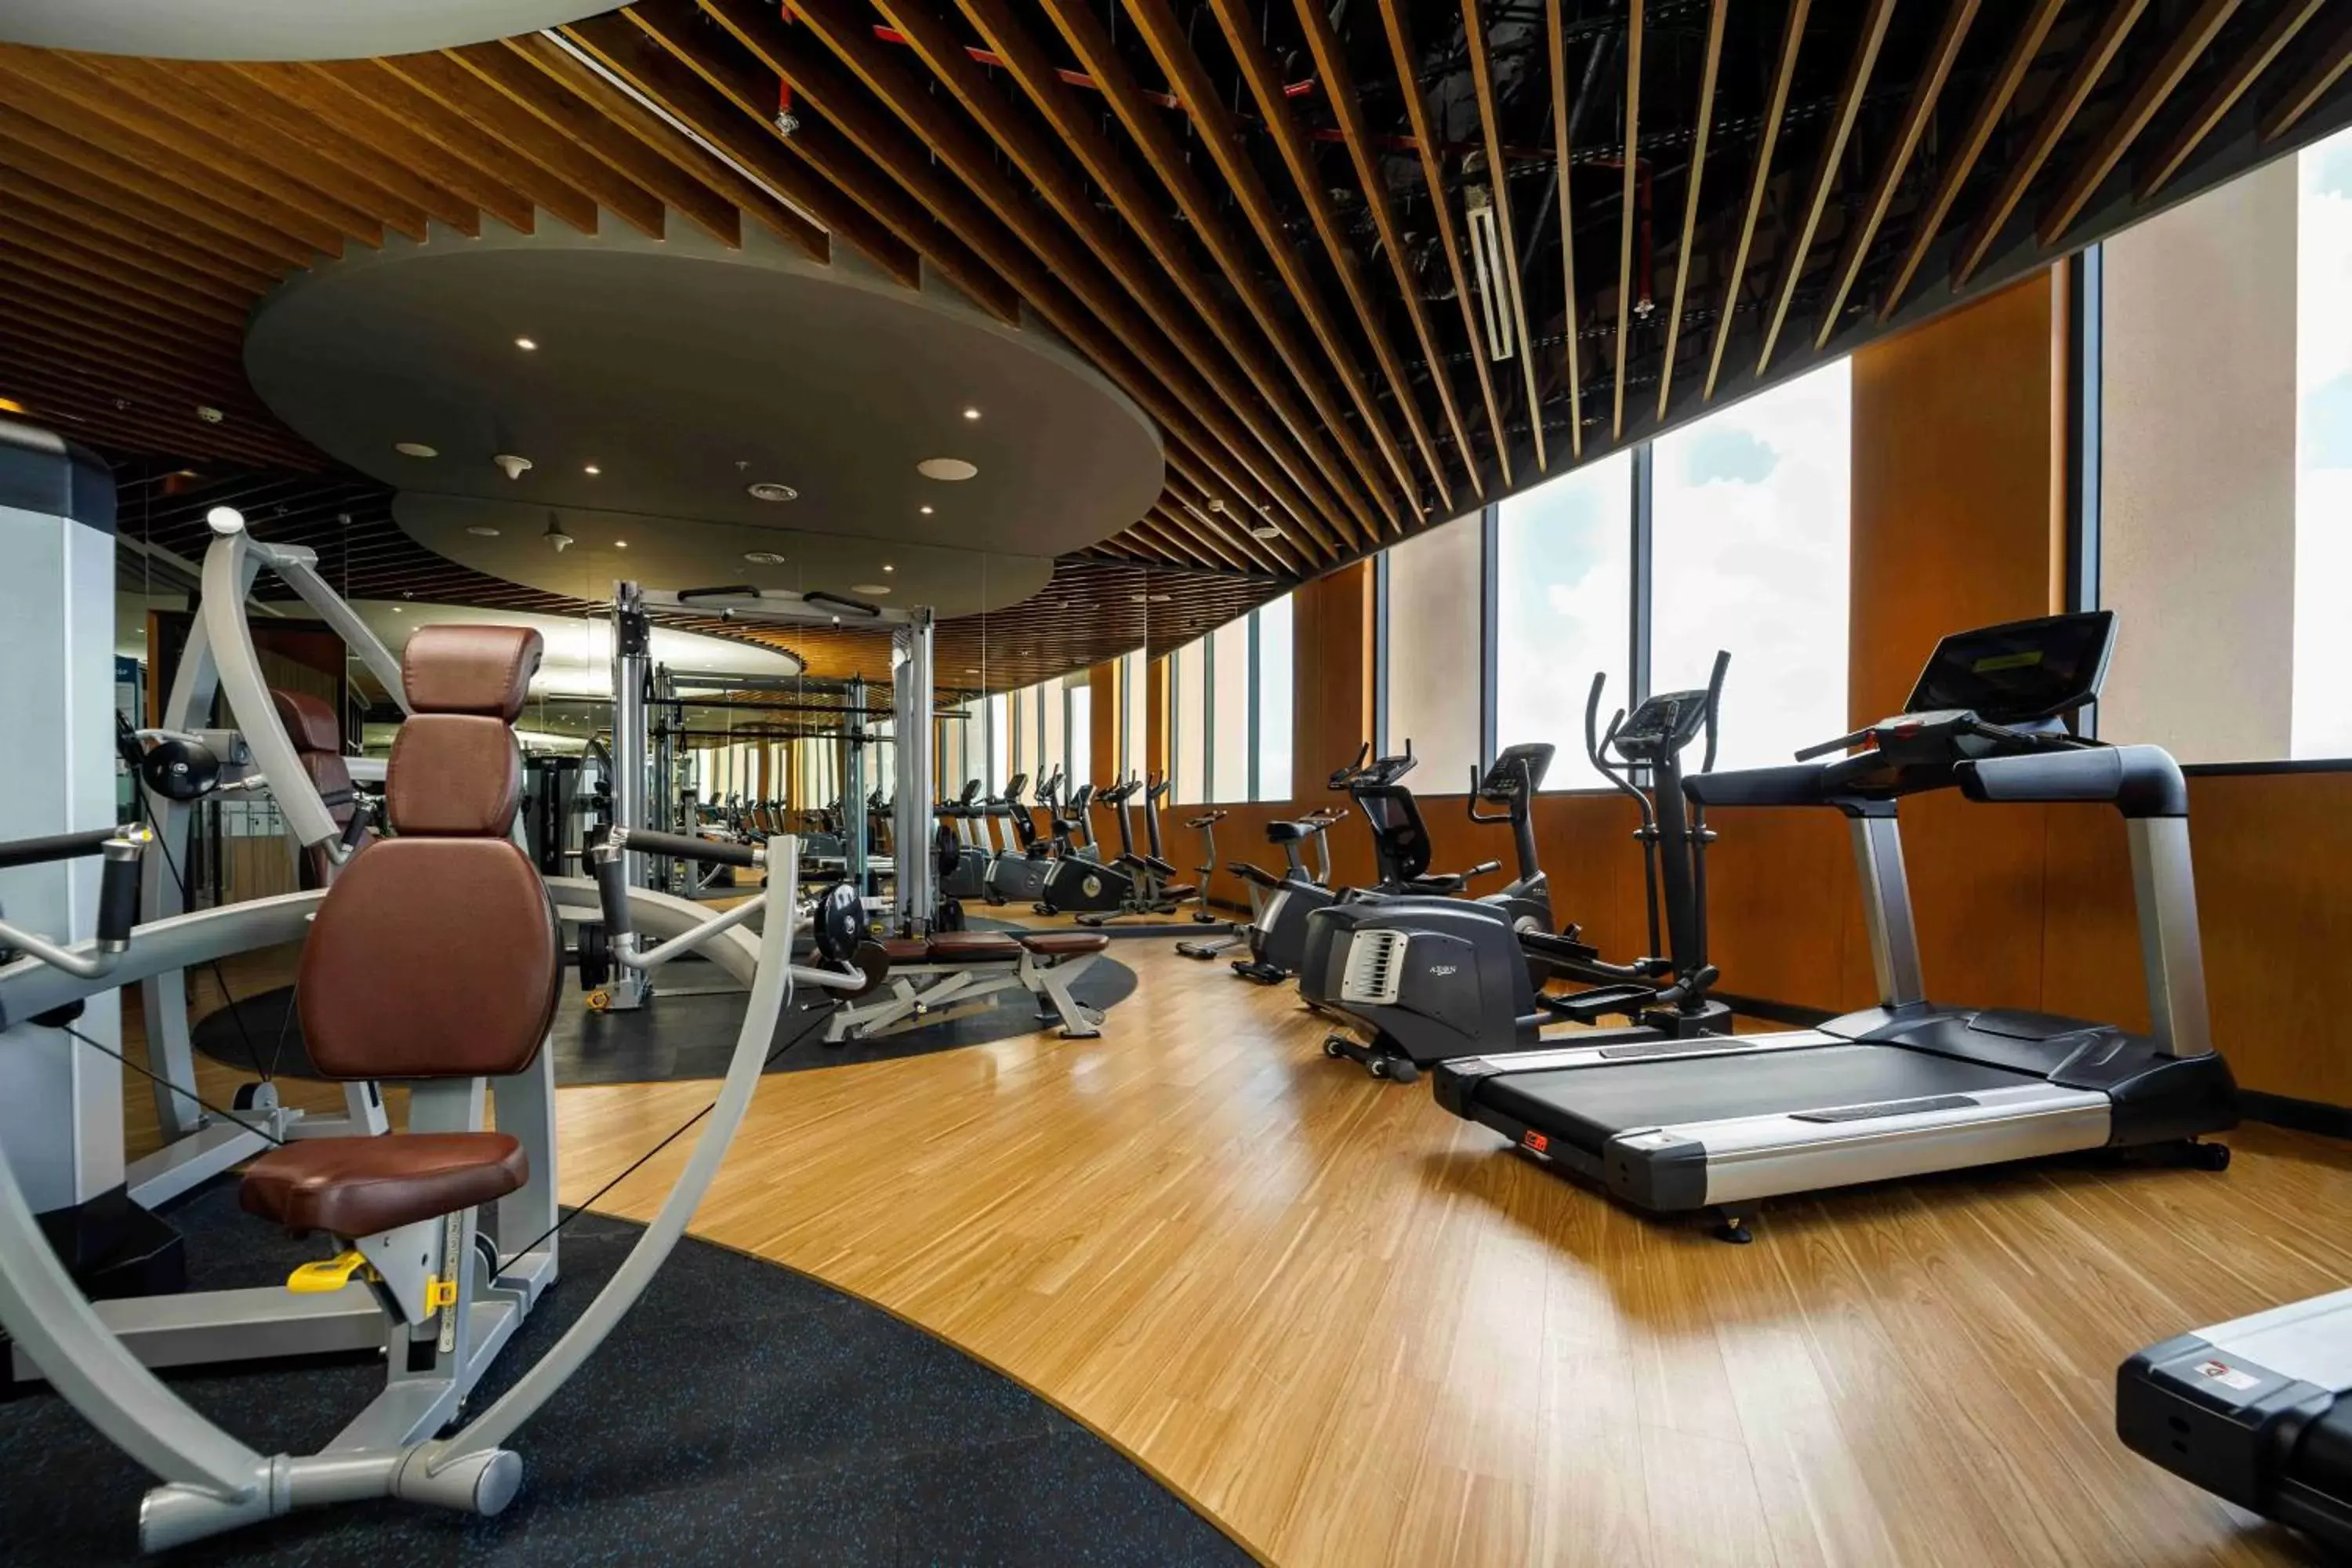 Fitness centre/facilities, Fitness Center/Facilities in Wyndham Garden Cam Ranh Resort